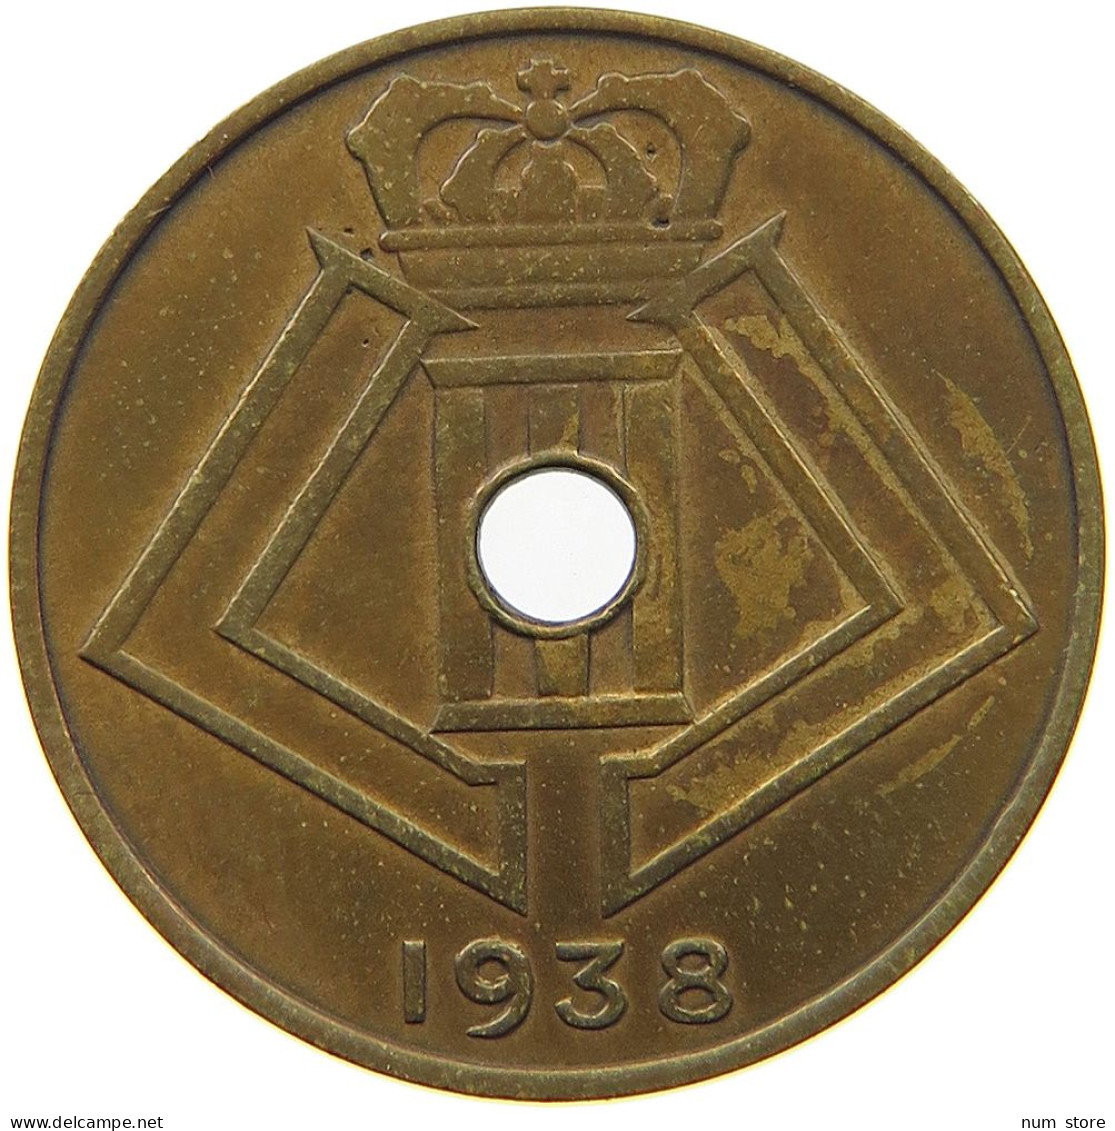 BELGIUM 10 CENTIMES 1938 10 CENTIMES PATTERN 1938 DUPR. 2653 B6 R2 SIMILOR #t081 0089 - 10 Cents